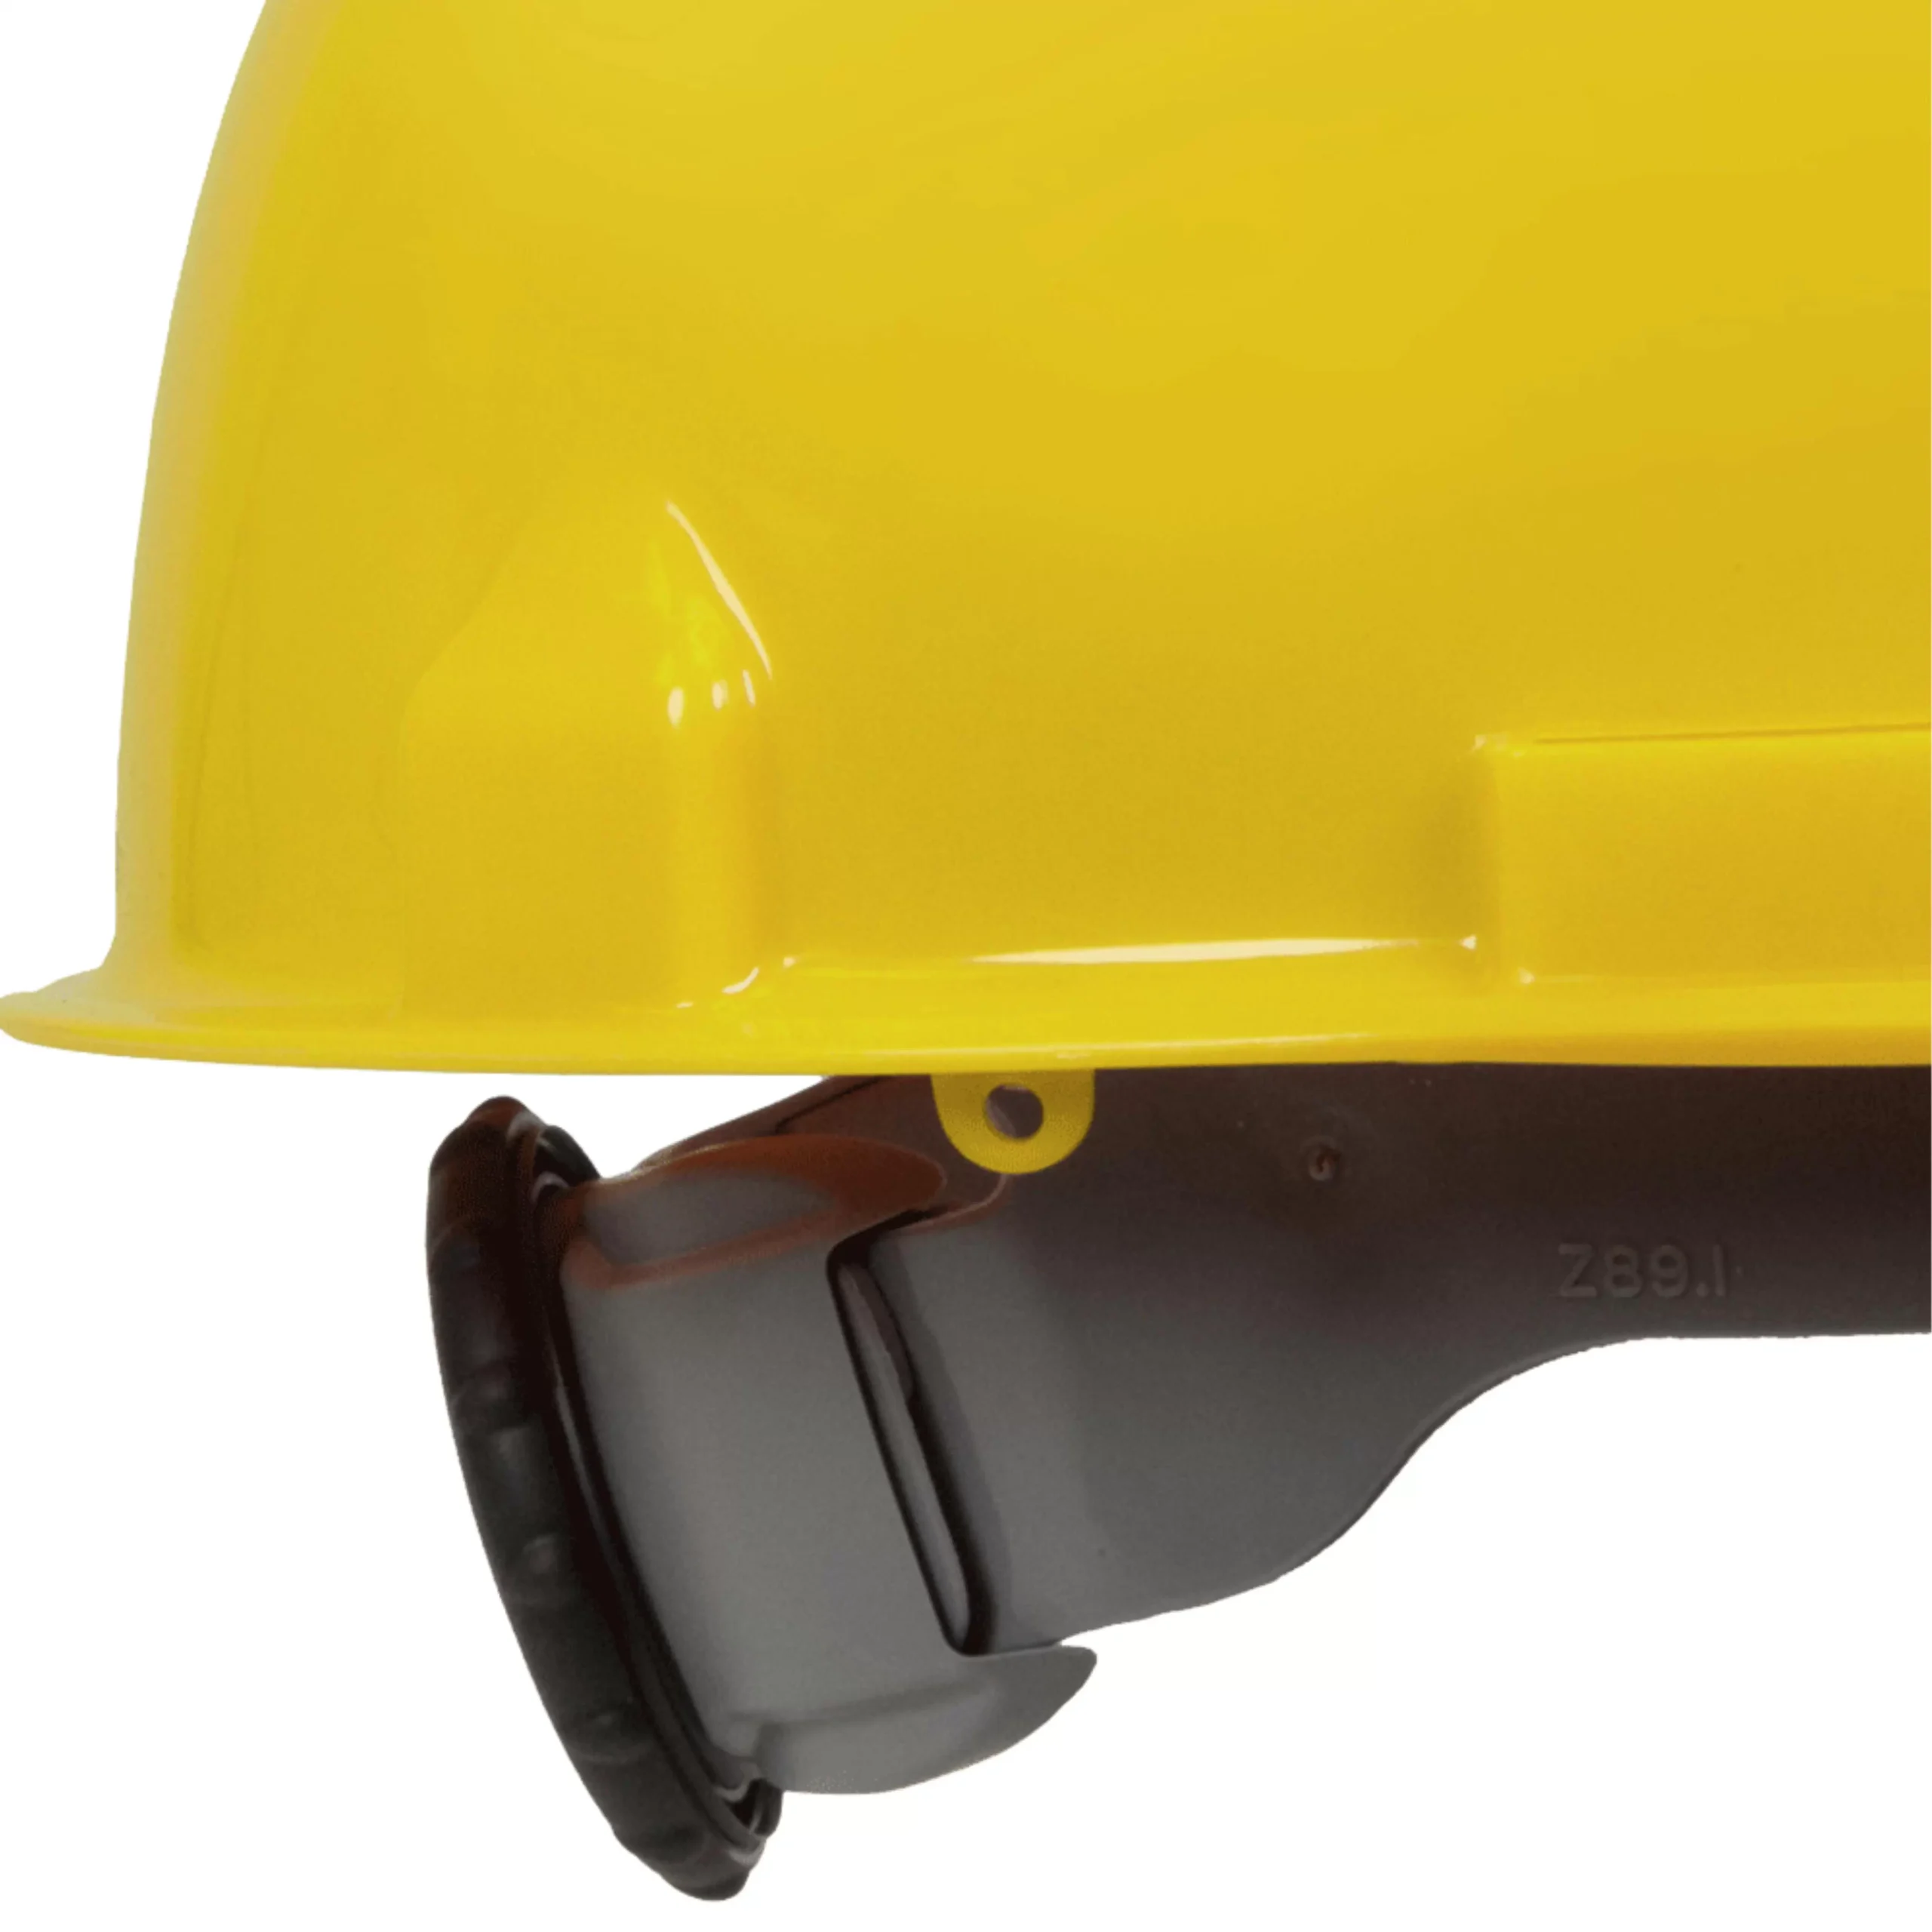 Personal Protective Equipment - Head Protection - Decals and Reflectors -  Bande réfléchissante, jaune, 1 pouce x 4 pouce